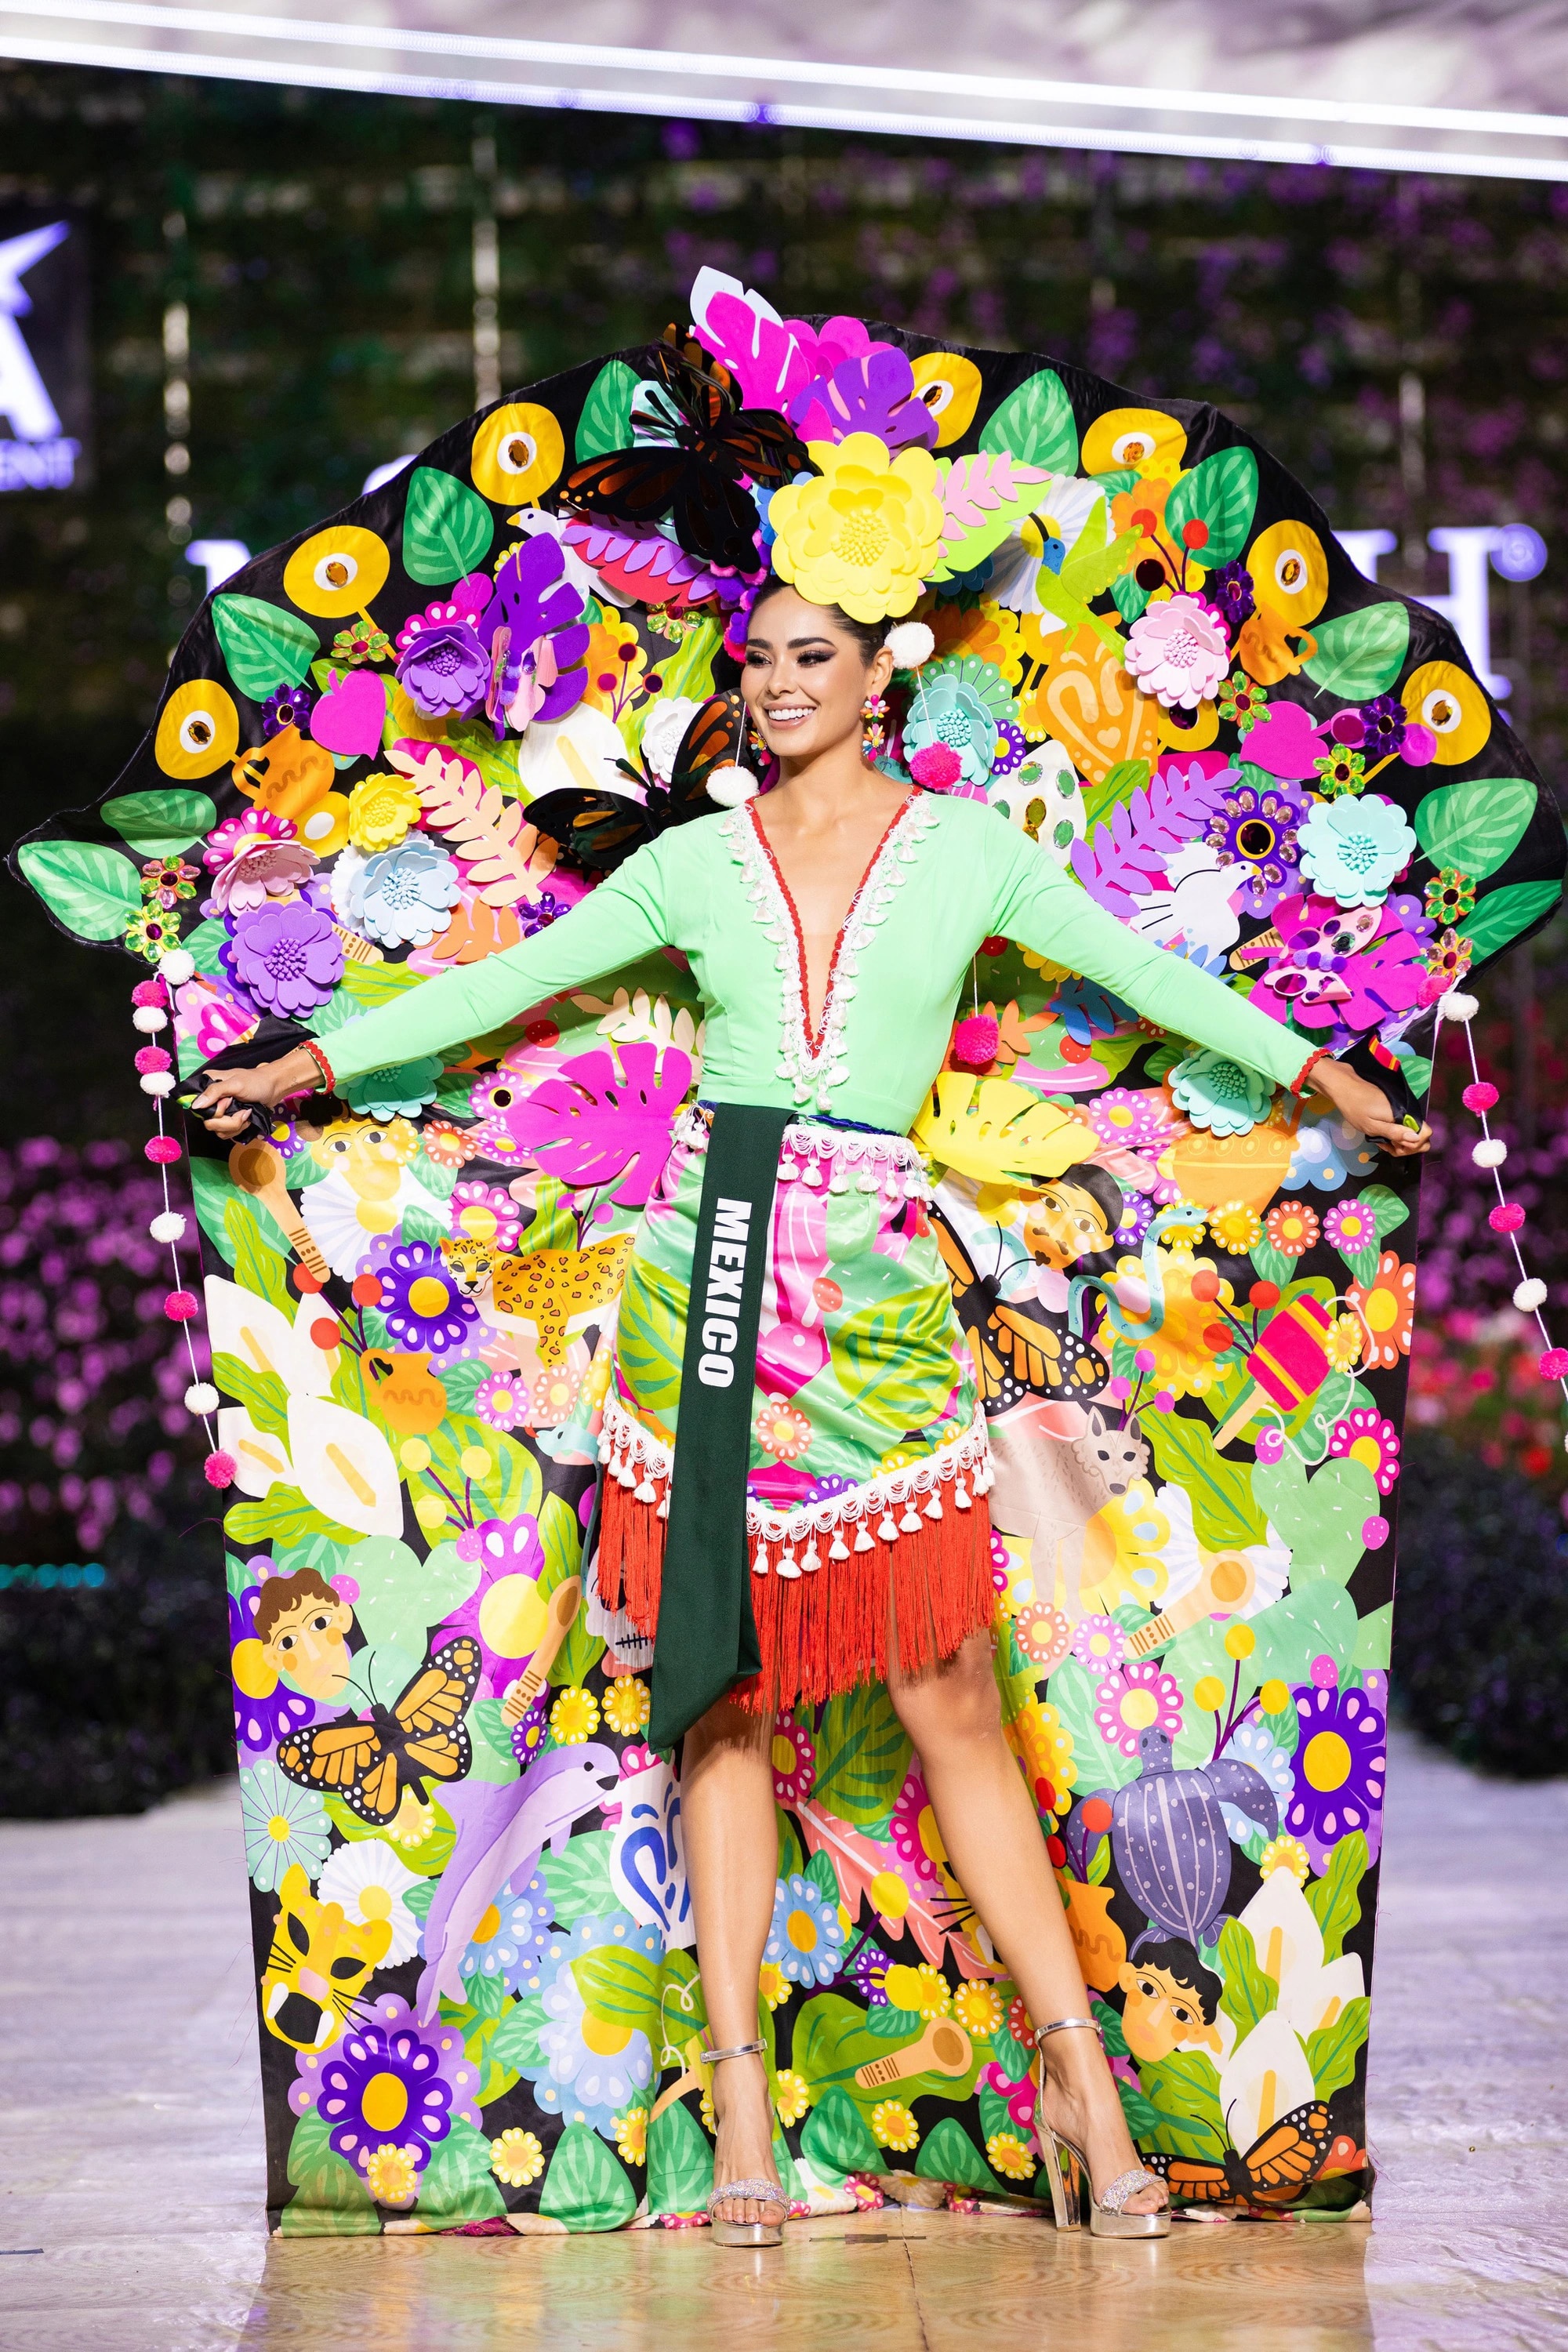 Bán kết Miss Earth 2023 màn trình Trang phục Dân tộc bùng nổ hình ảnh cỏ hoa, muông thú - Ảnh 18.